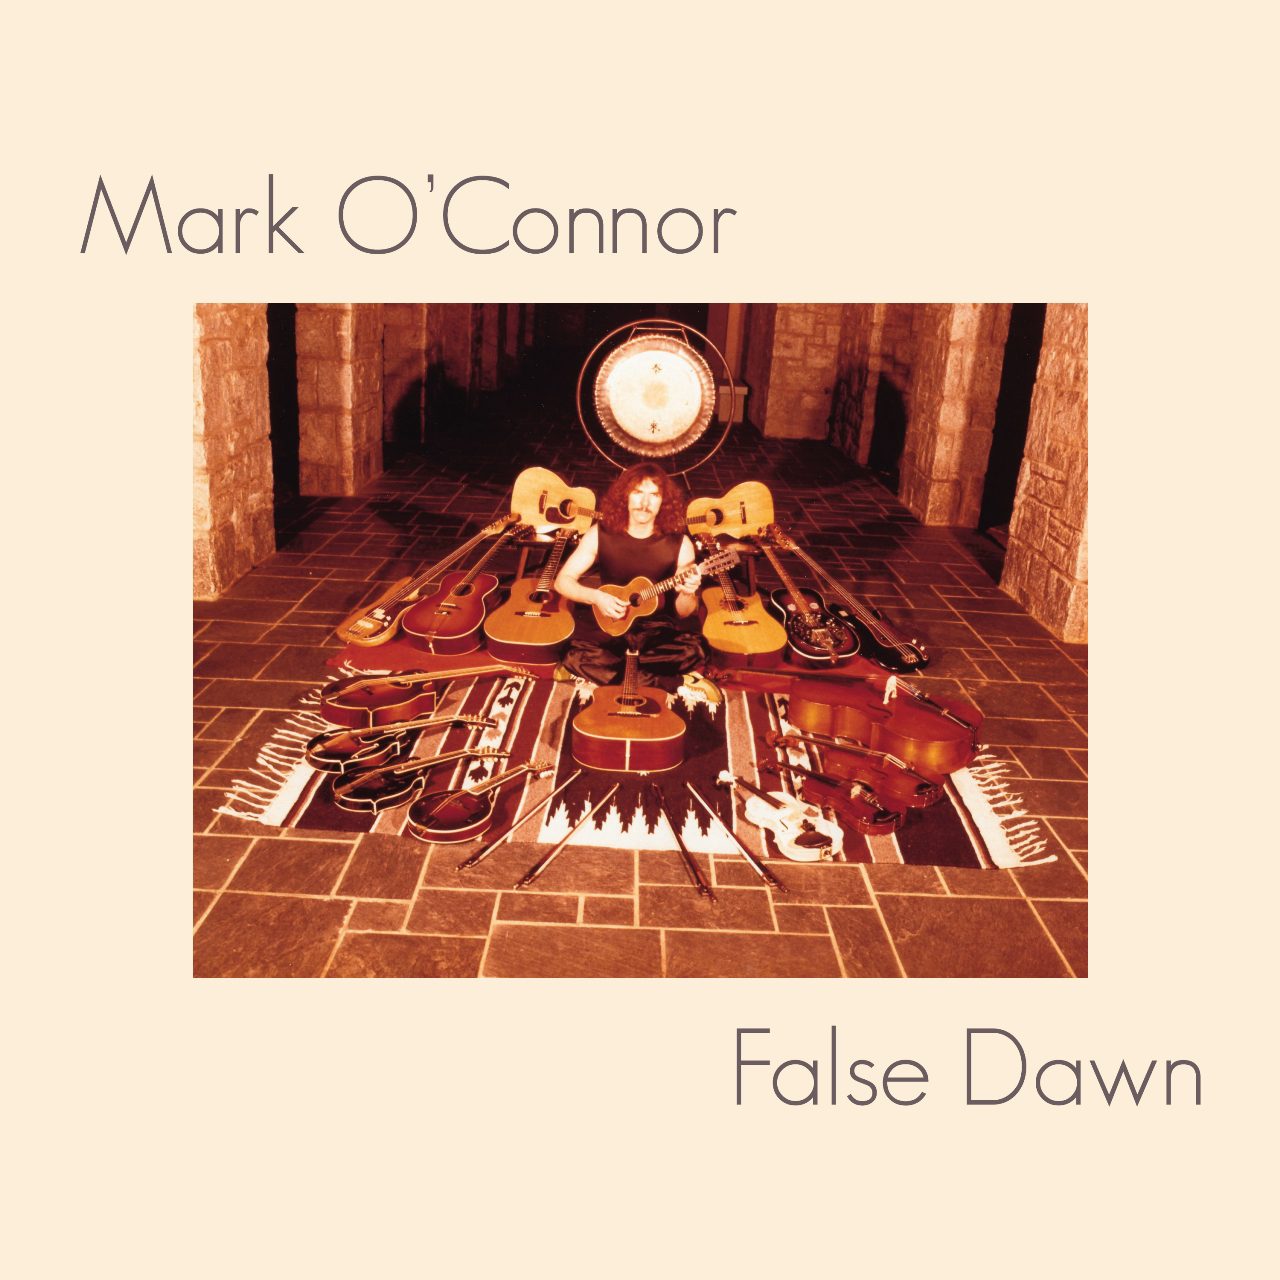 Mark O’Connor – False Dawn cover album